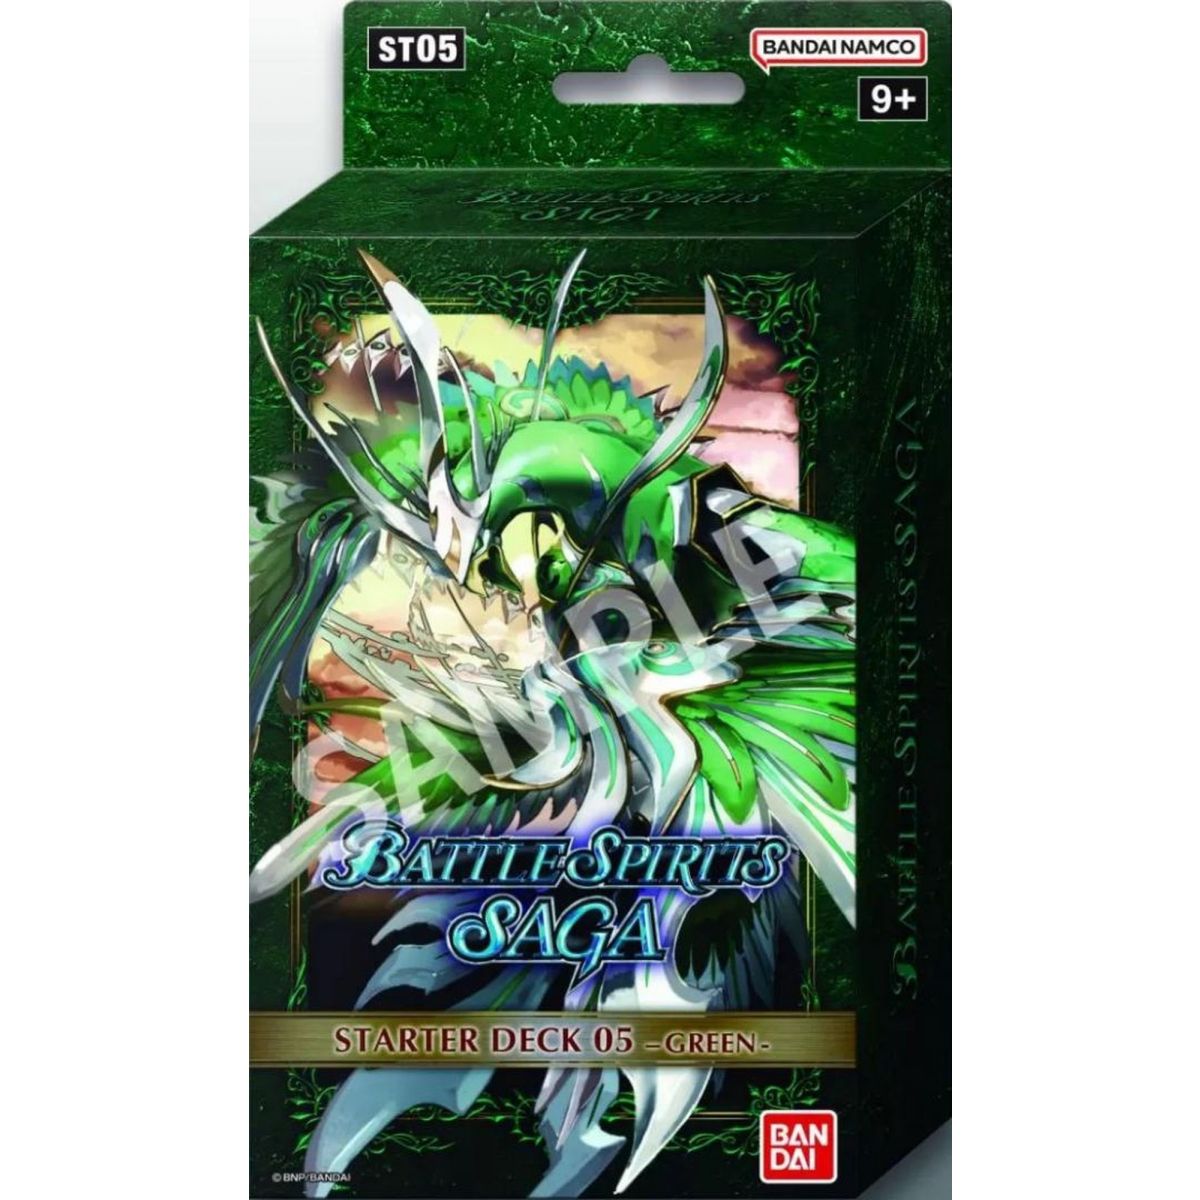 Battle Spirits Saga - Starter Deck - Green - ST05 - EN